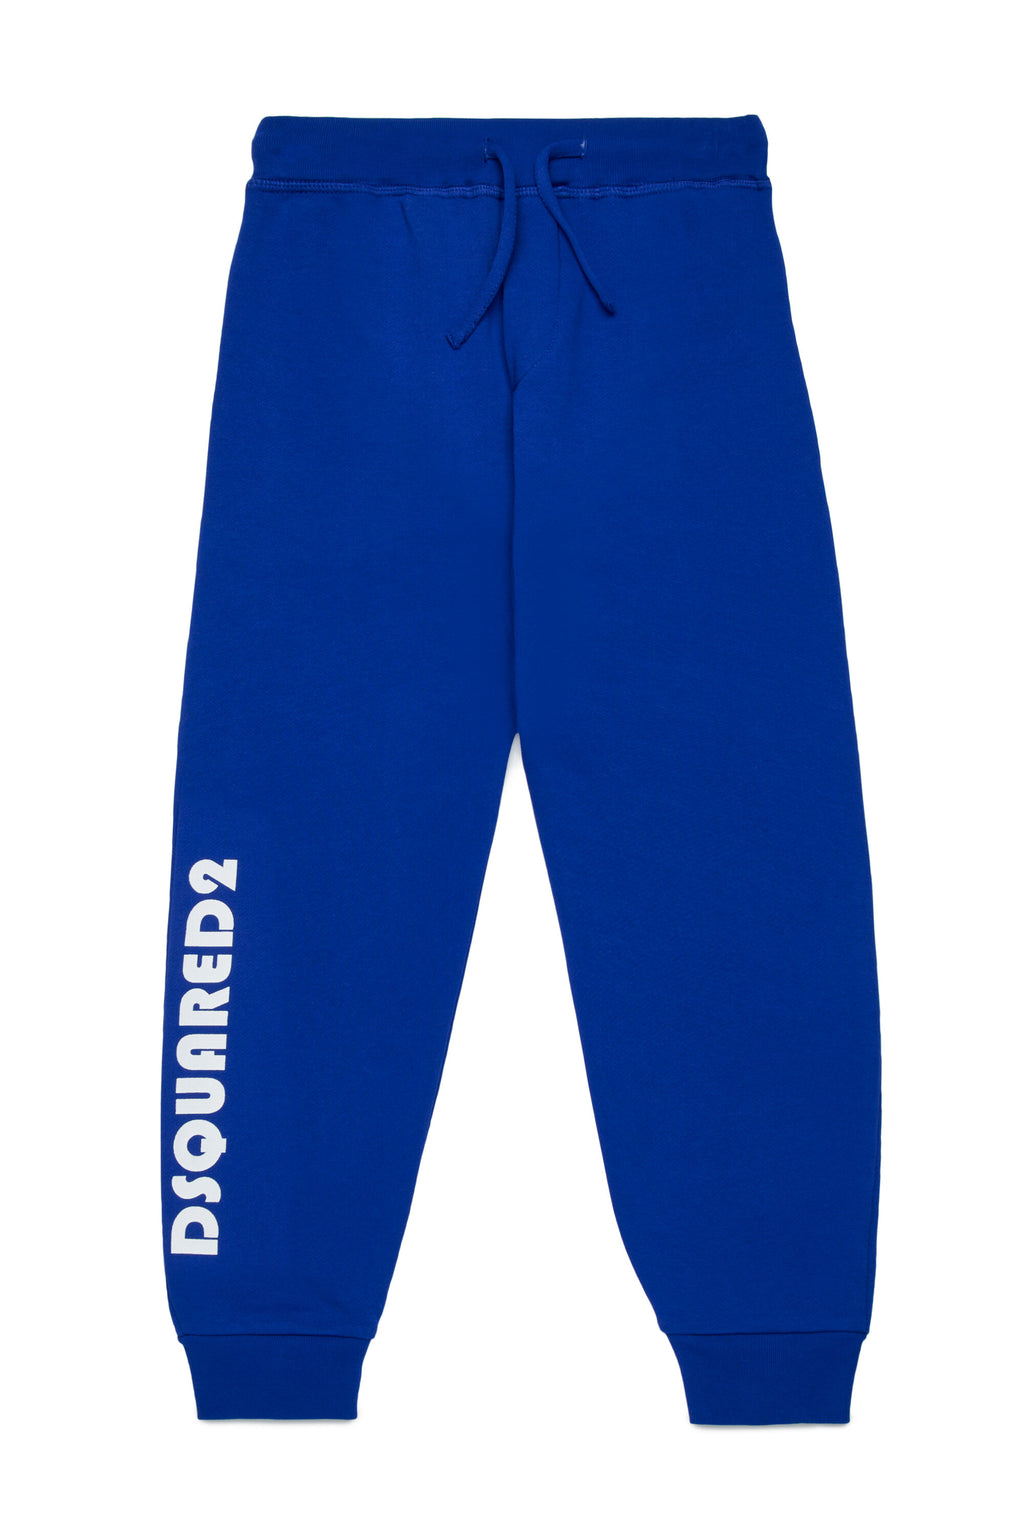 Pantalones deportivos en chándal con logotipo en mayúsculas